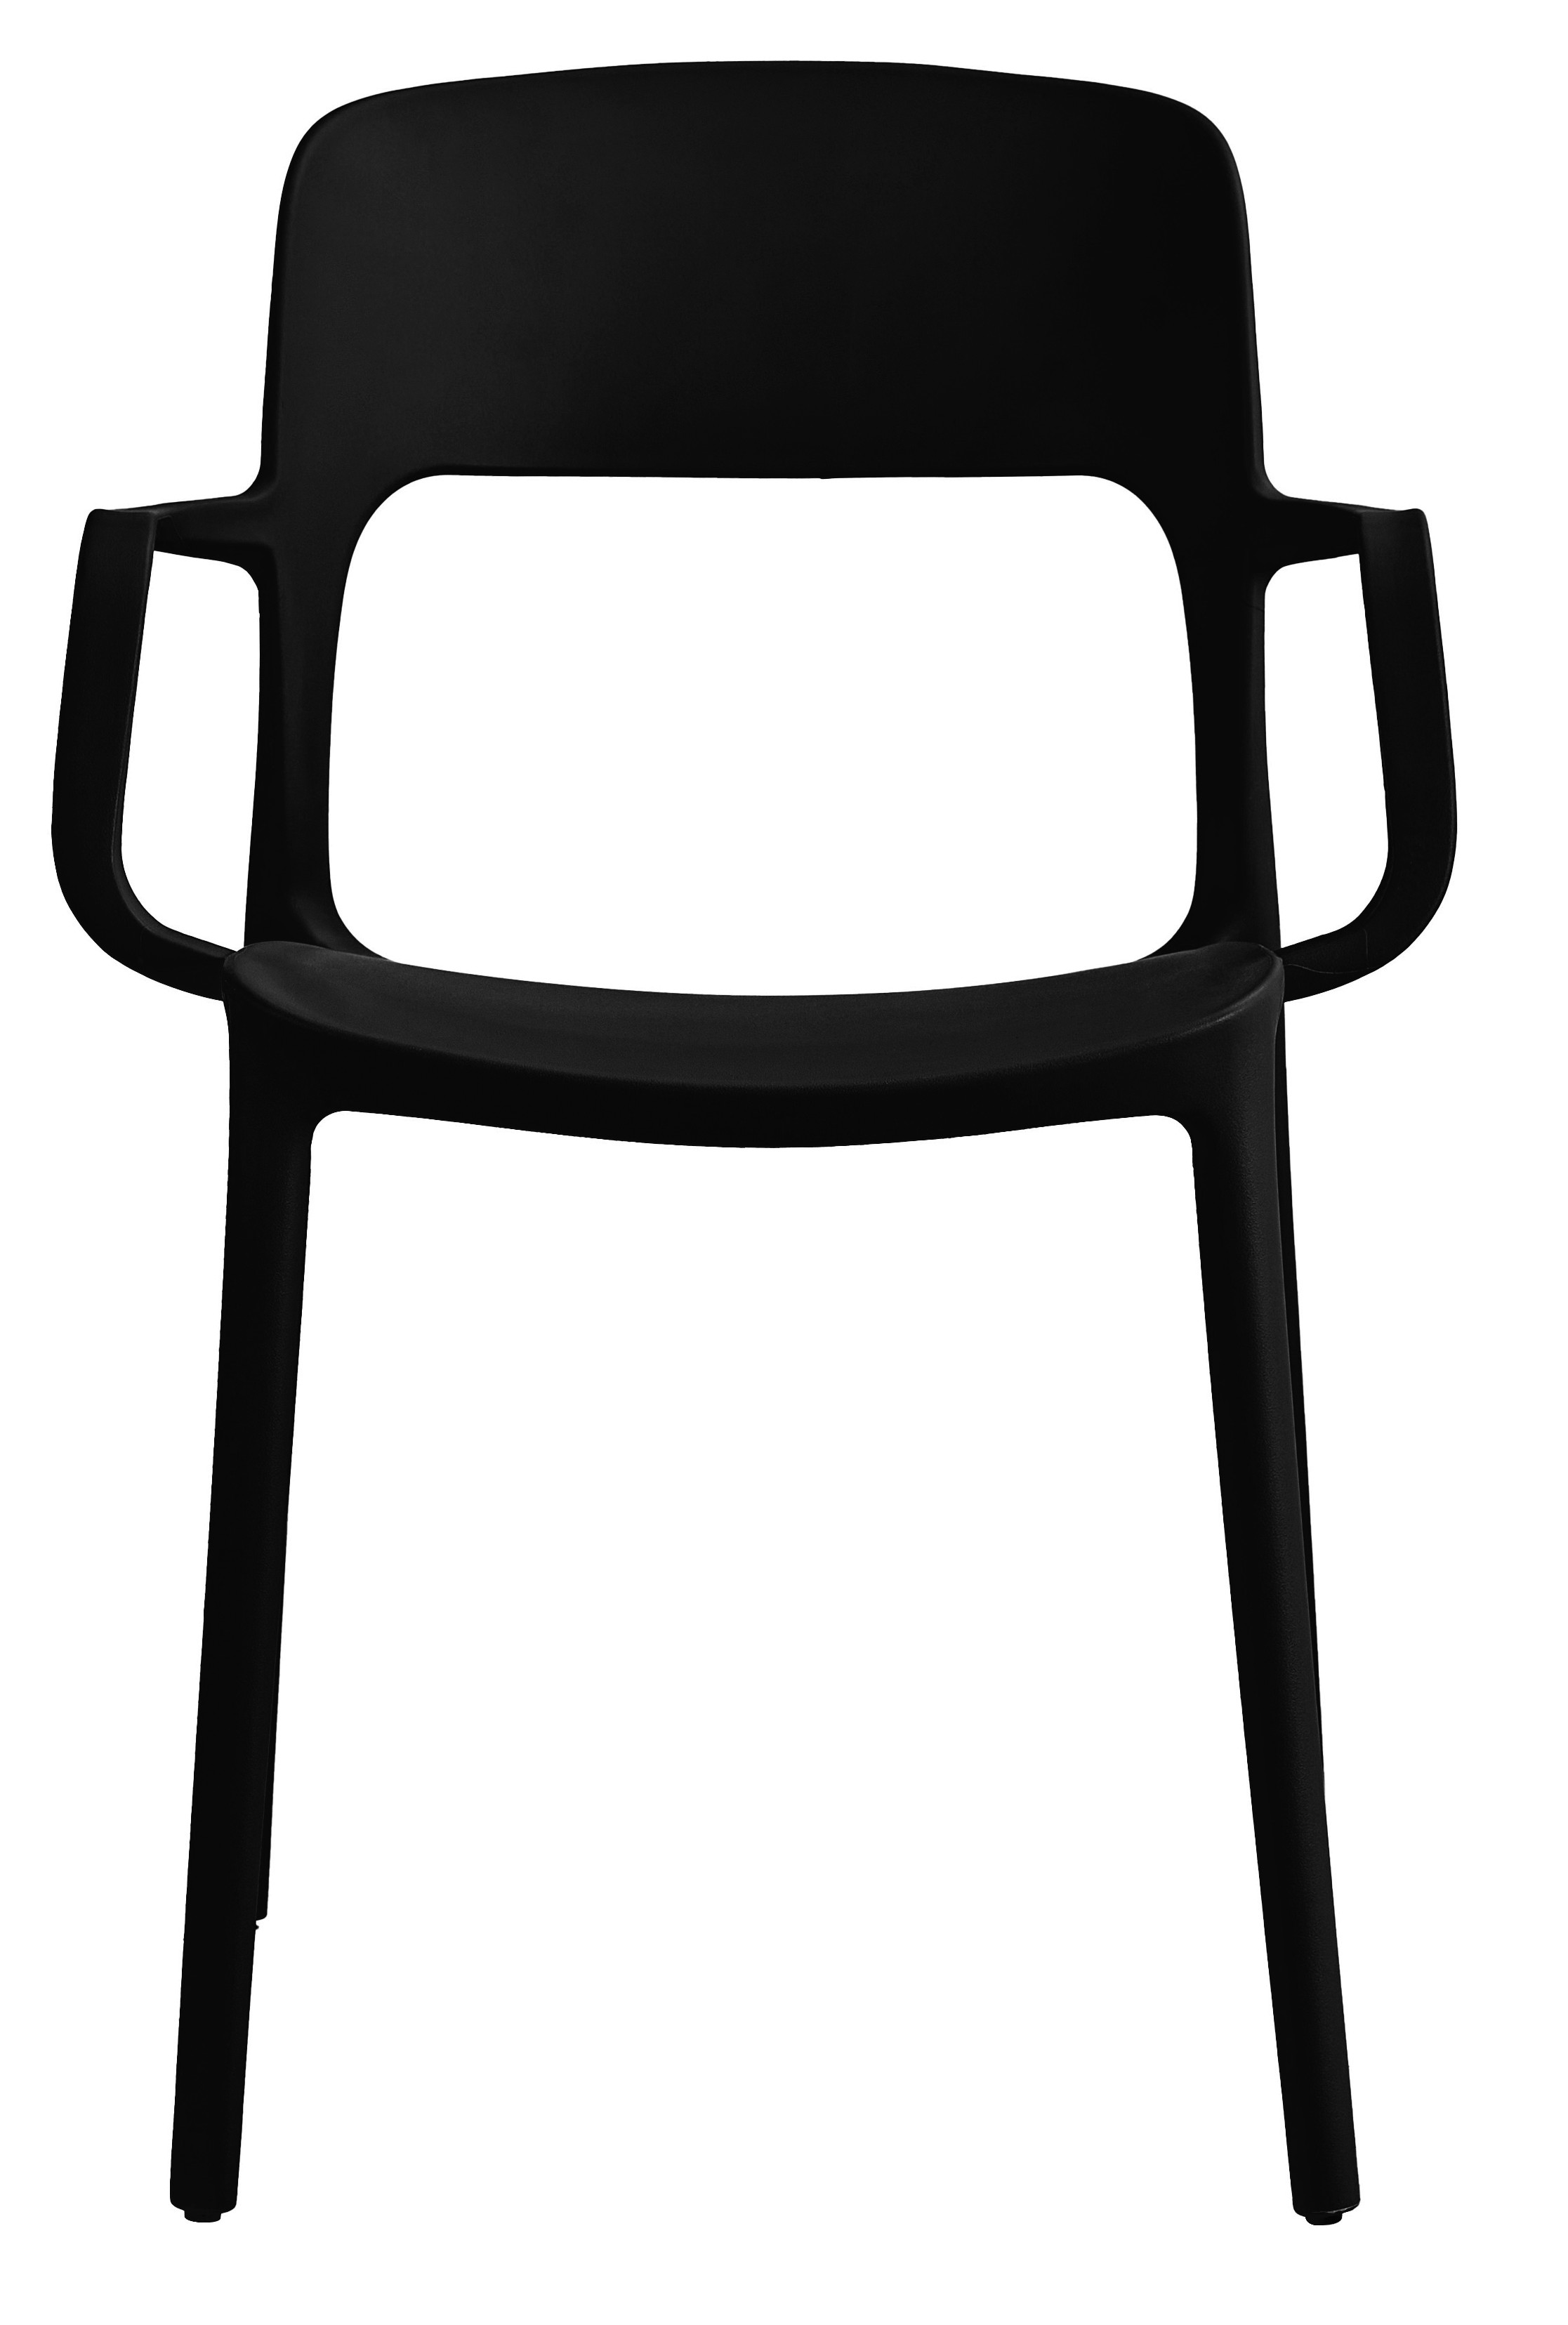 Set čtyř židlí SAHA černé (4ks)